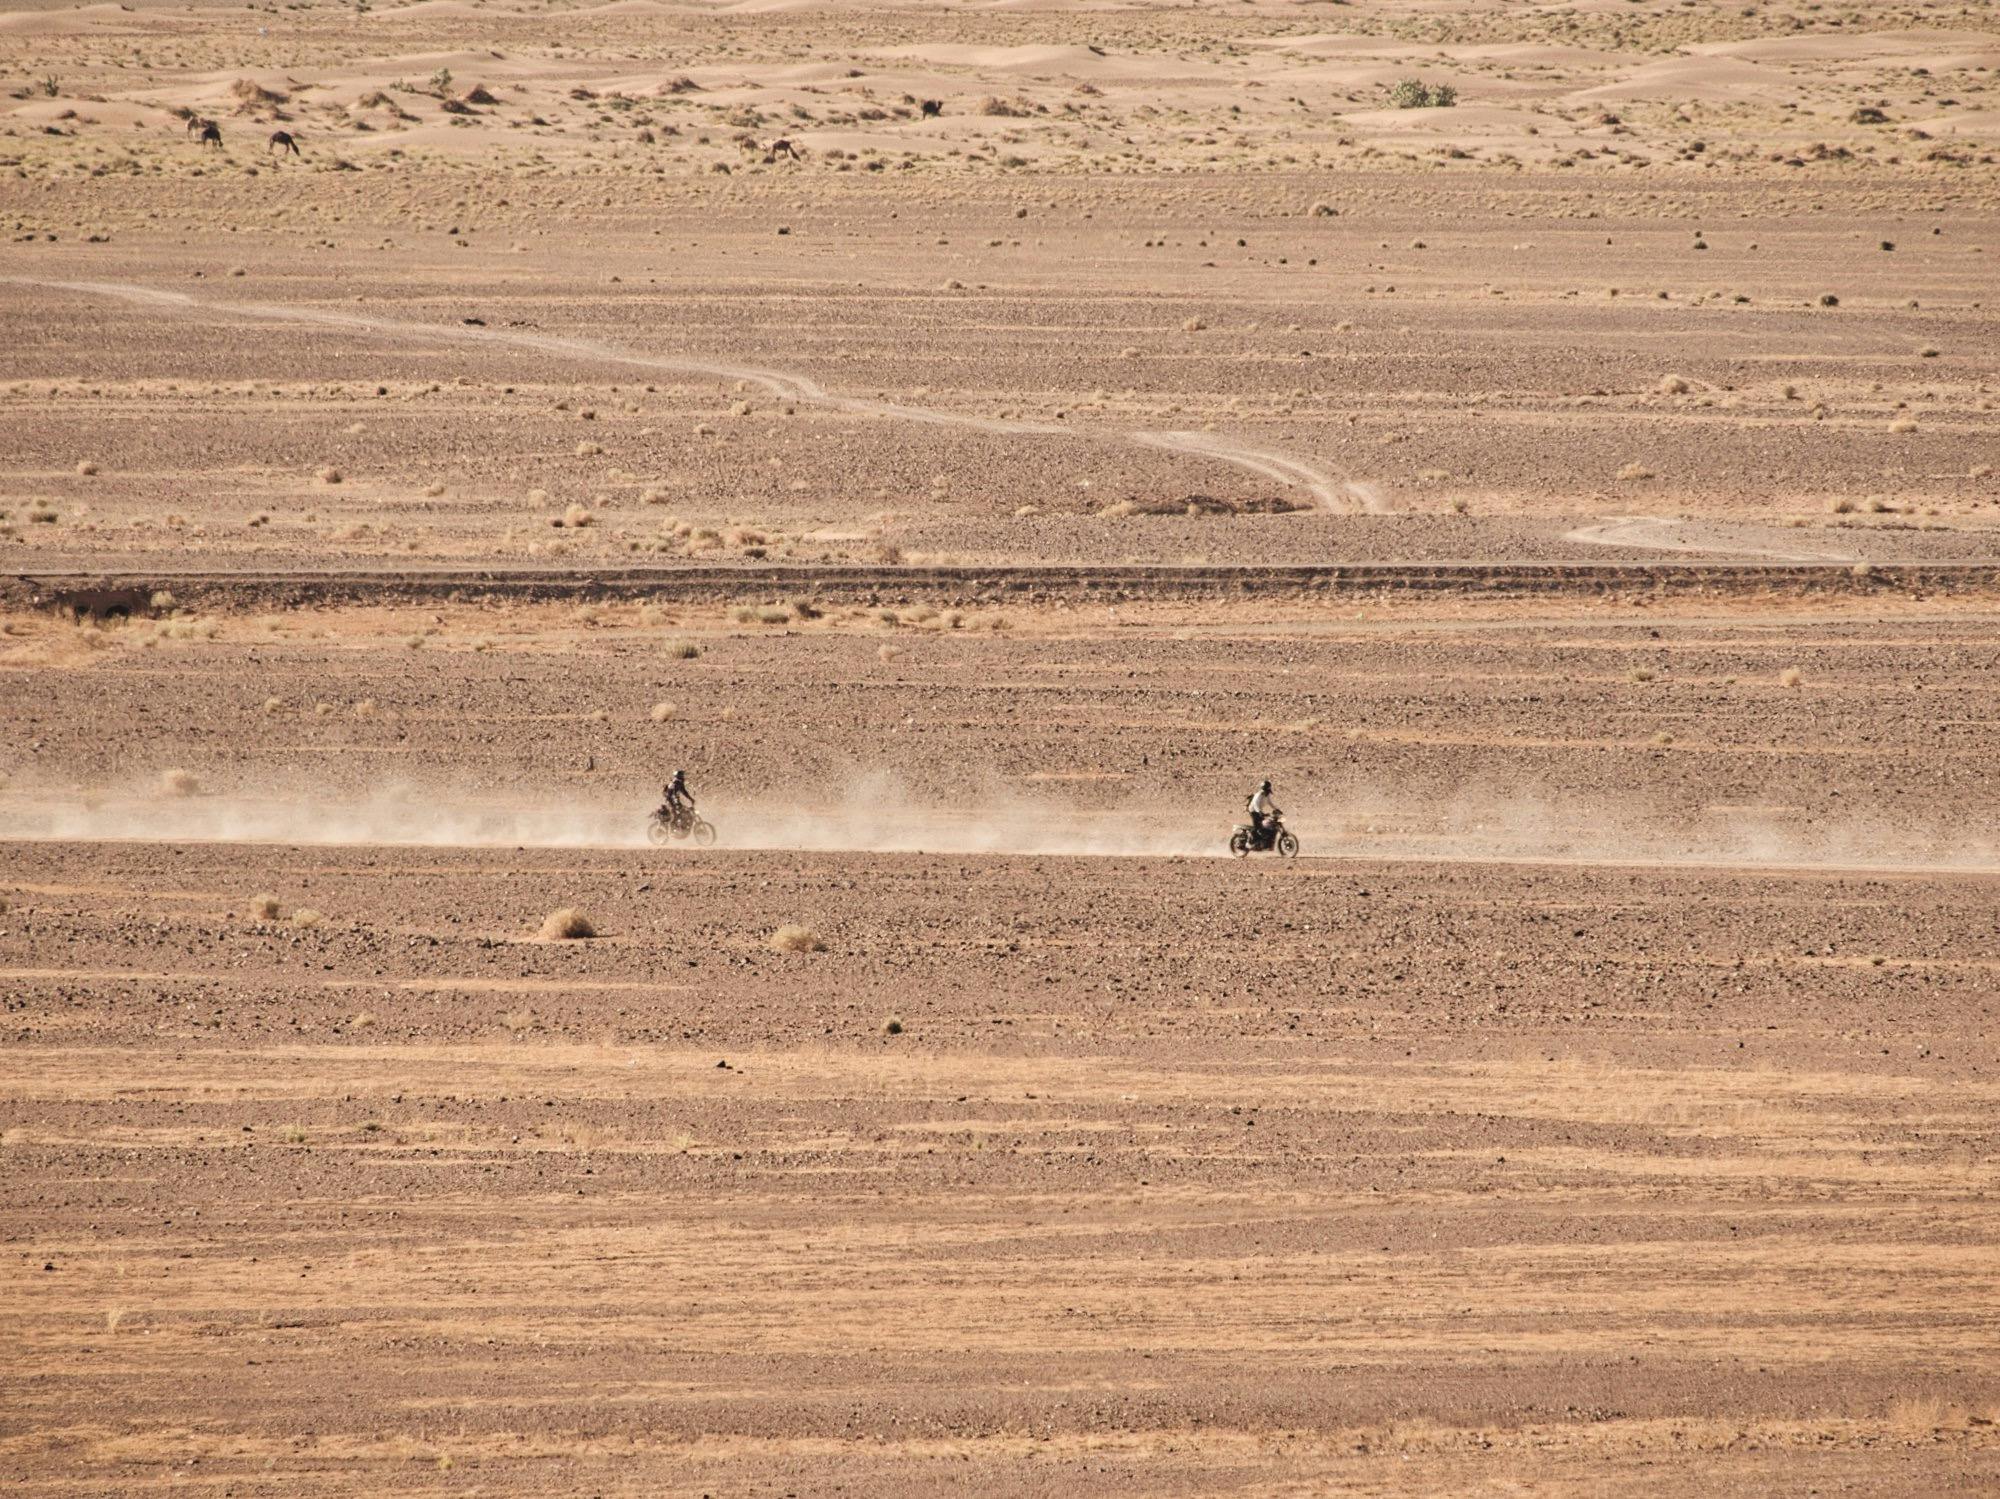 2 motorbikes roaming the desert